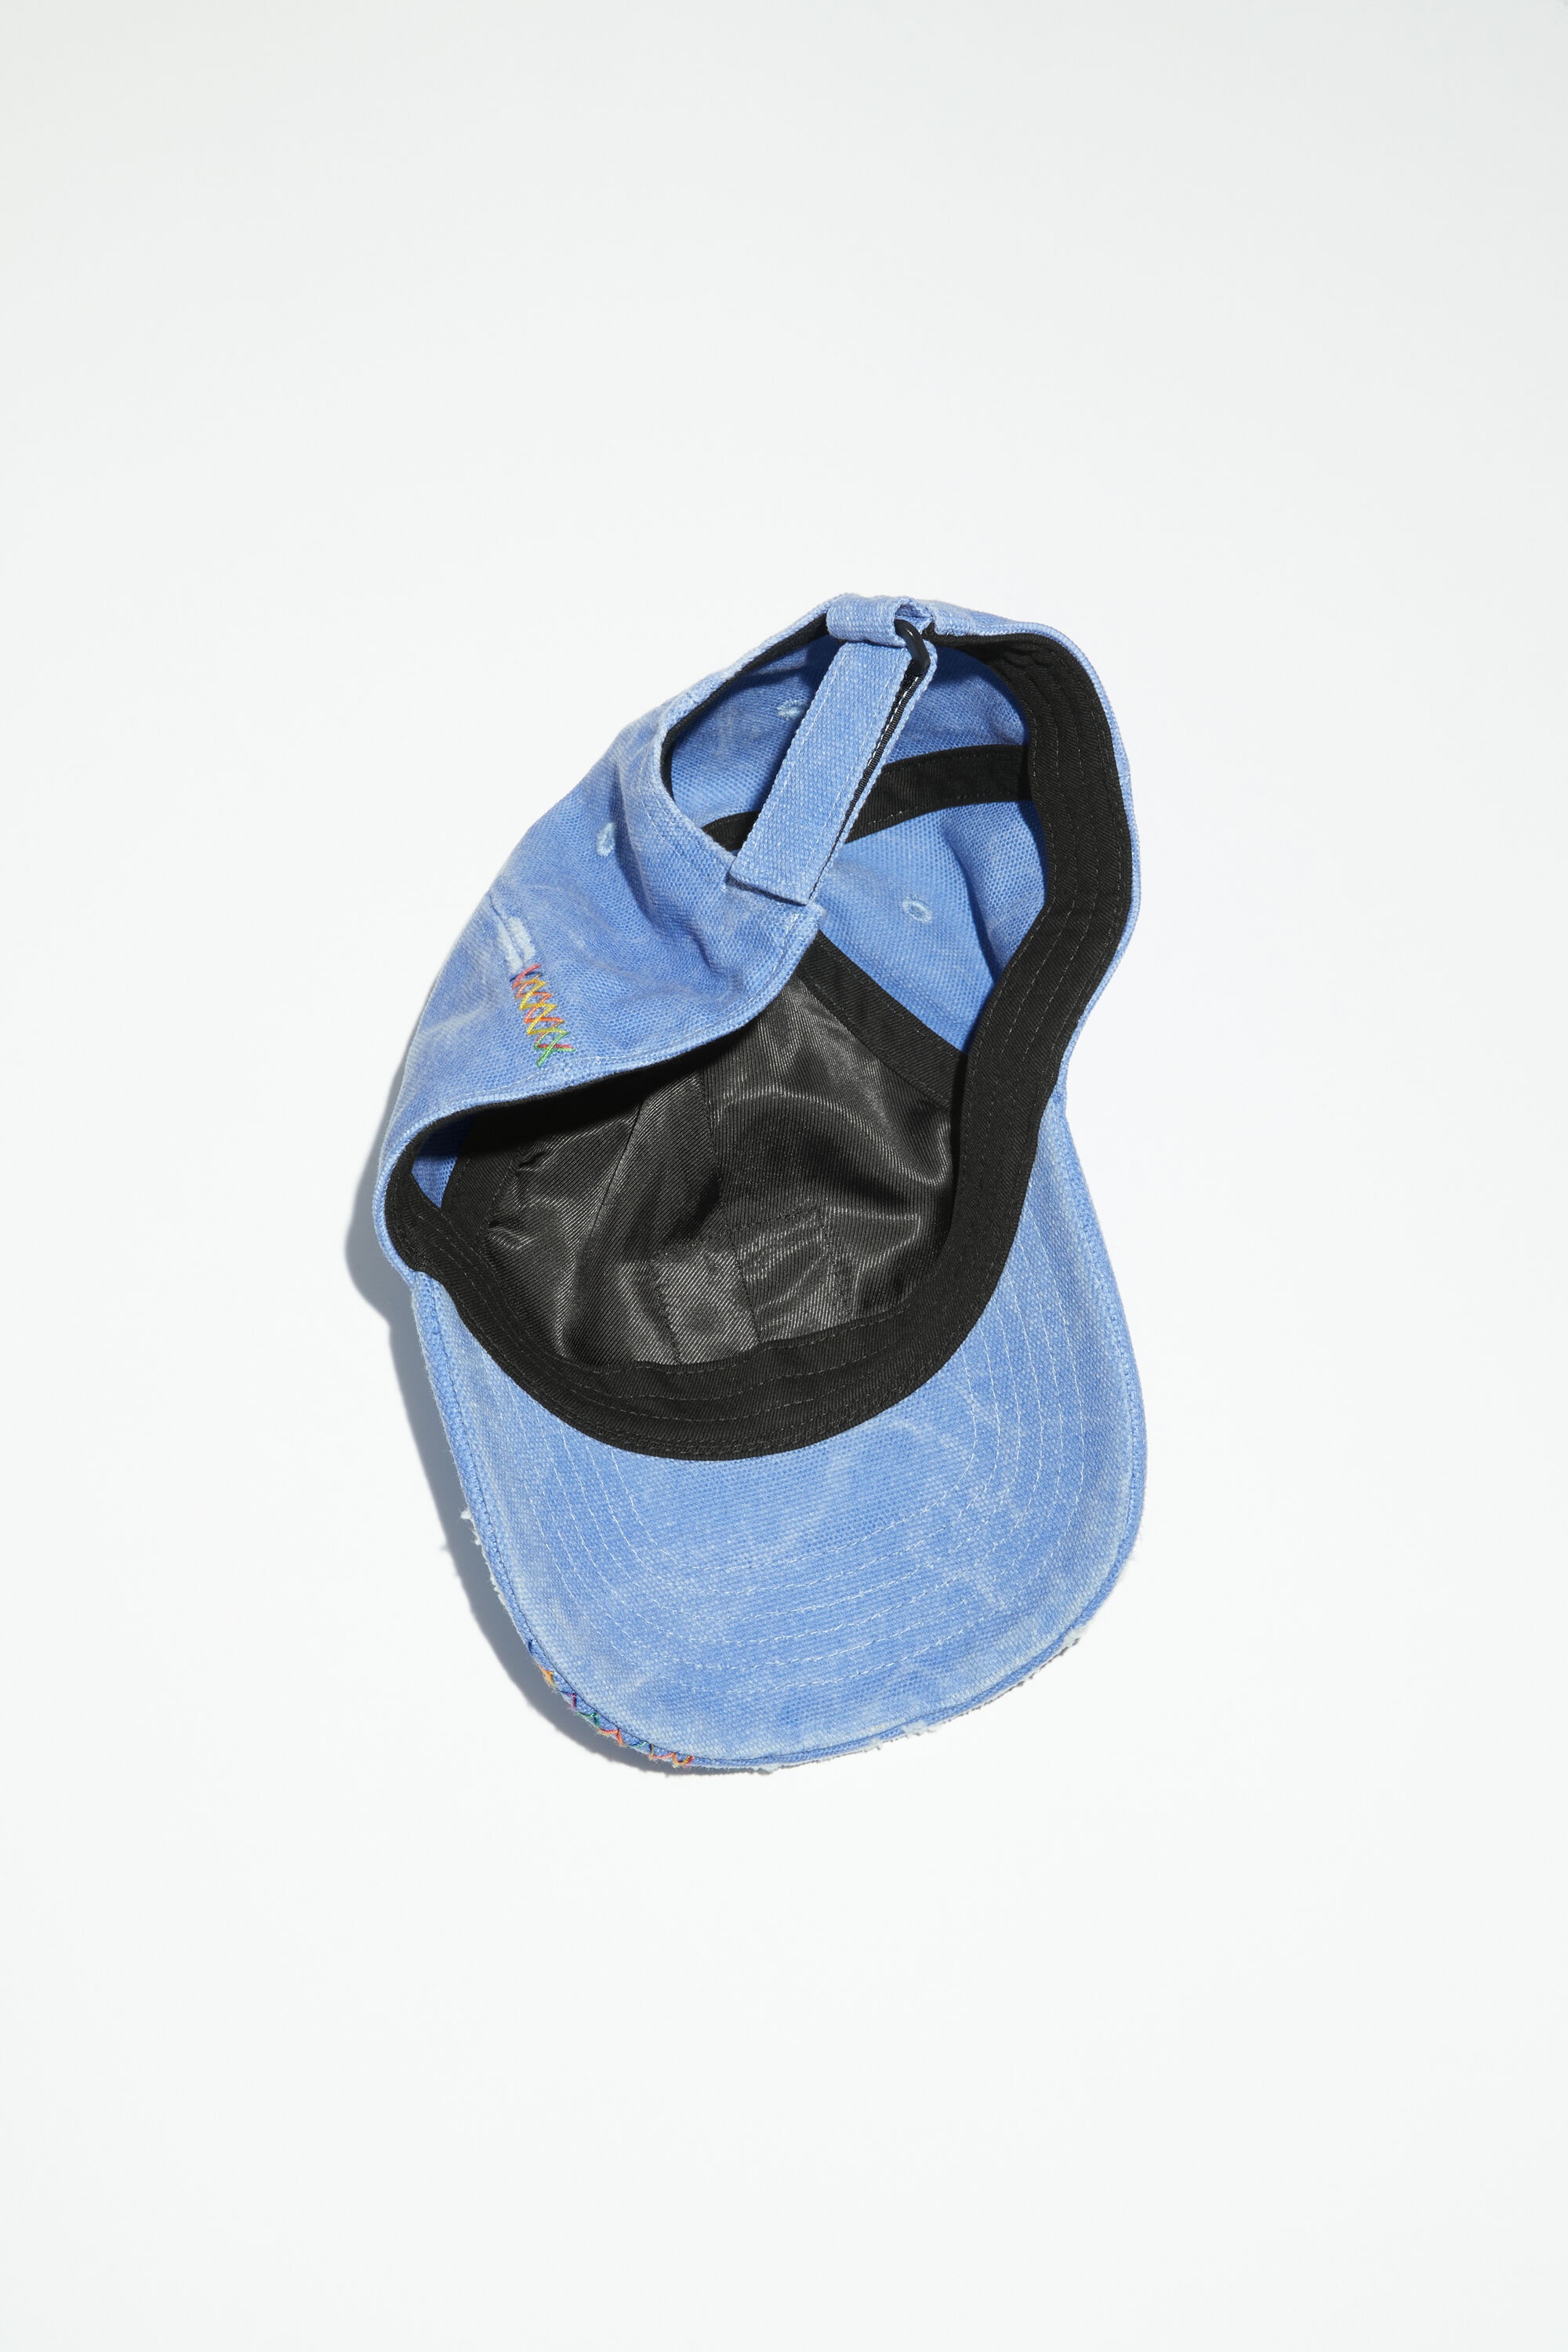 Leather Face patch cap - Powder blue - 4